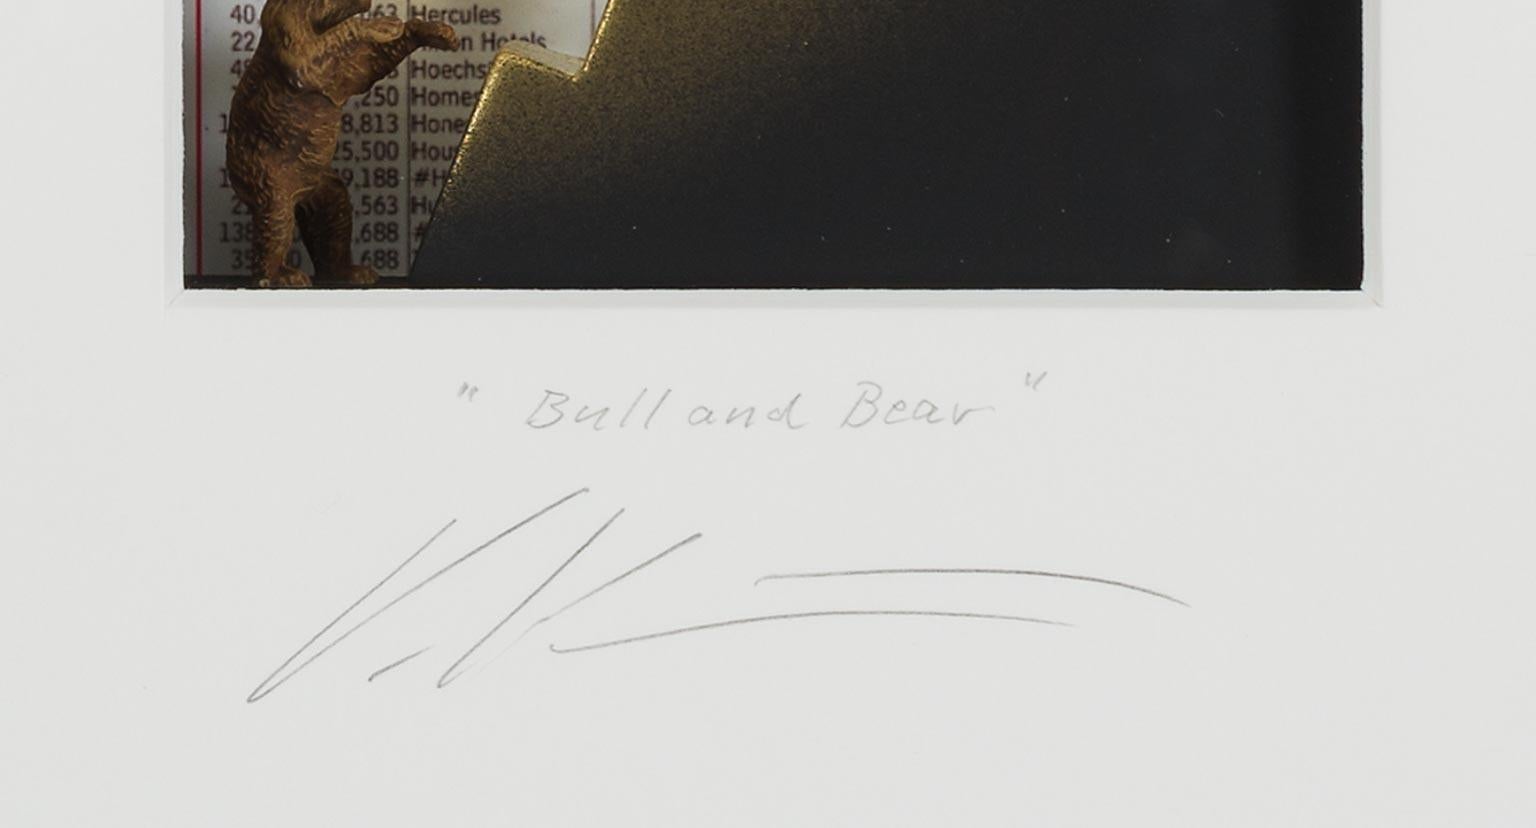 Bull&Bear - contemporary art in boxes artwork of the stock market byVolker Kuhn  1